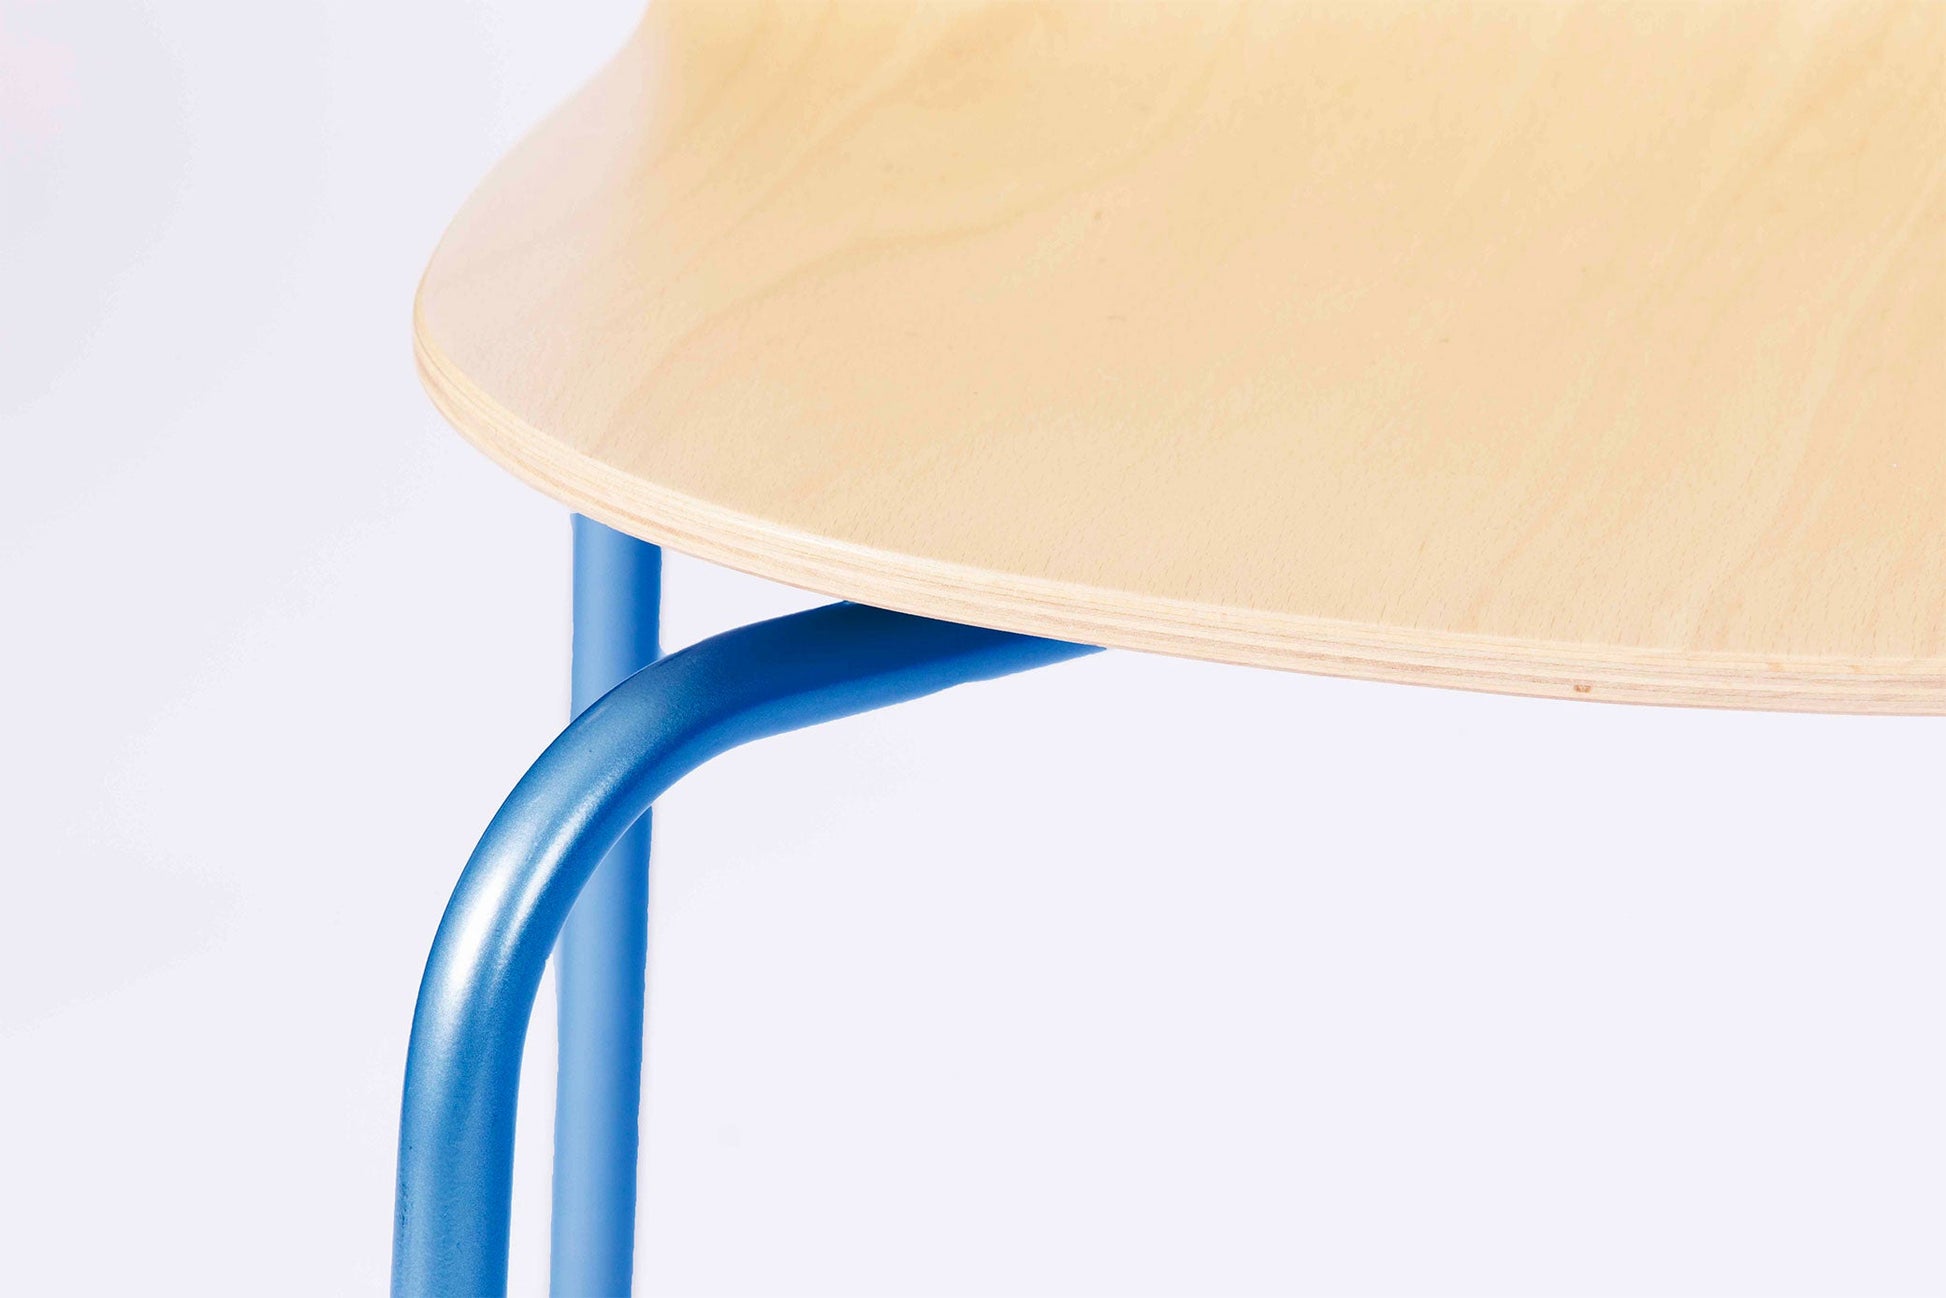 chaise bois et métal design originale la chaise française